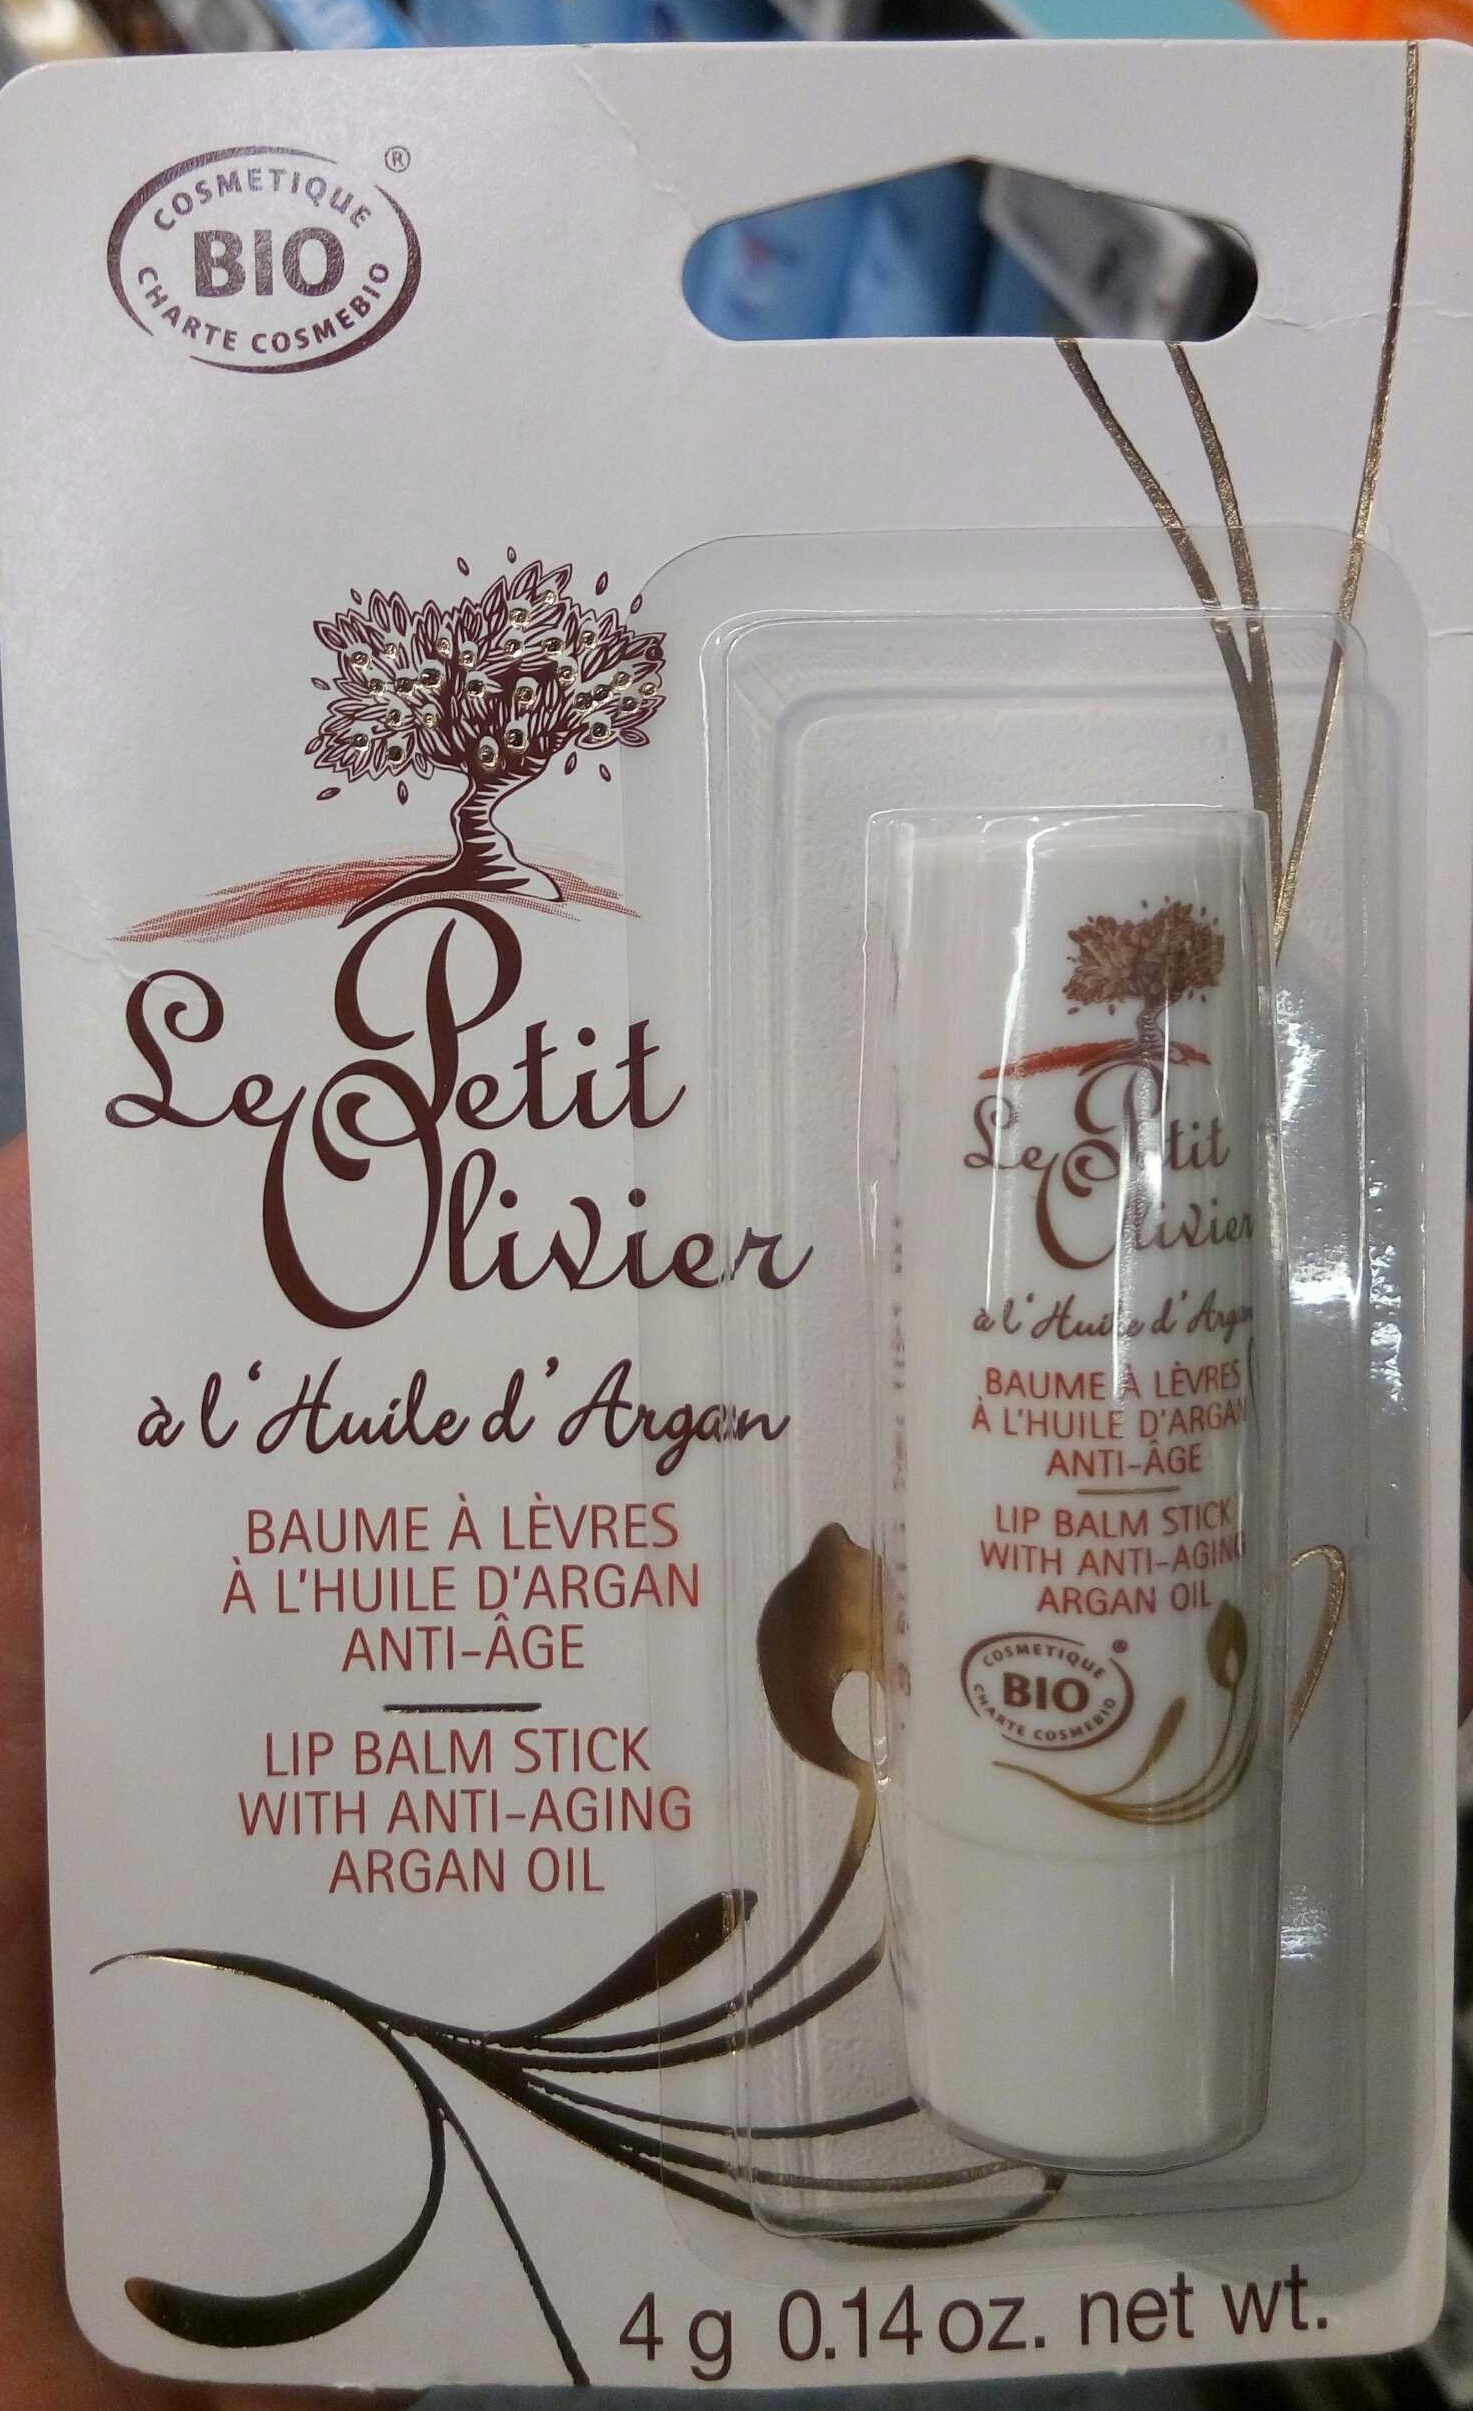 Baume à lèvres à l'huile d'argan anti-âge - Product - fr